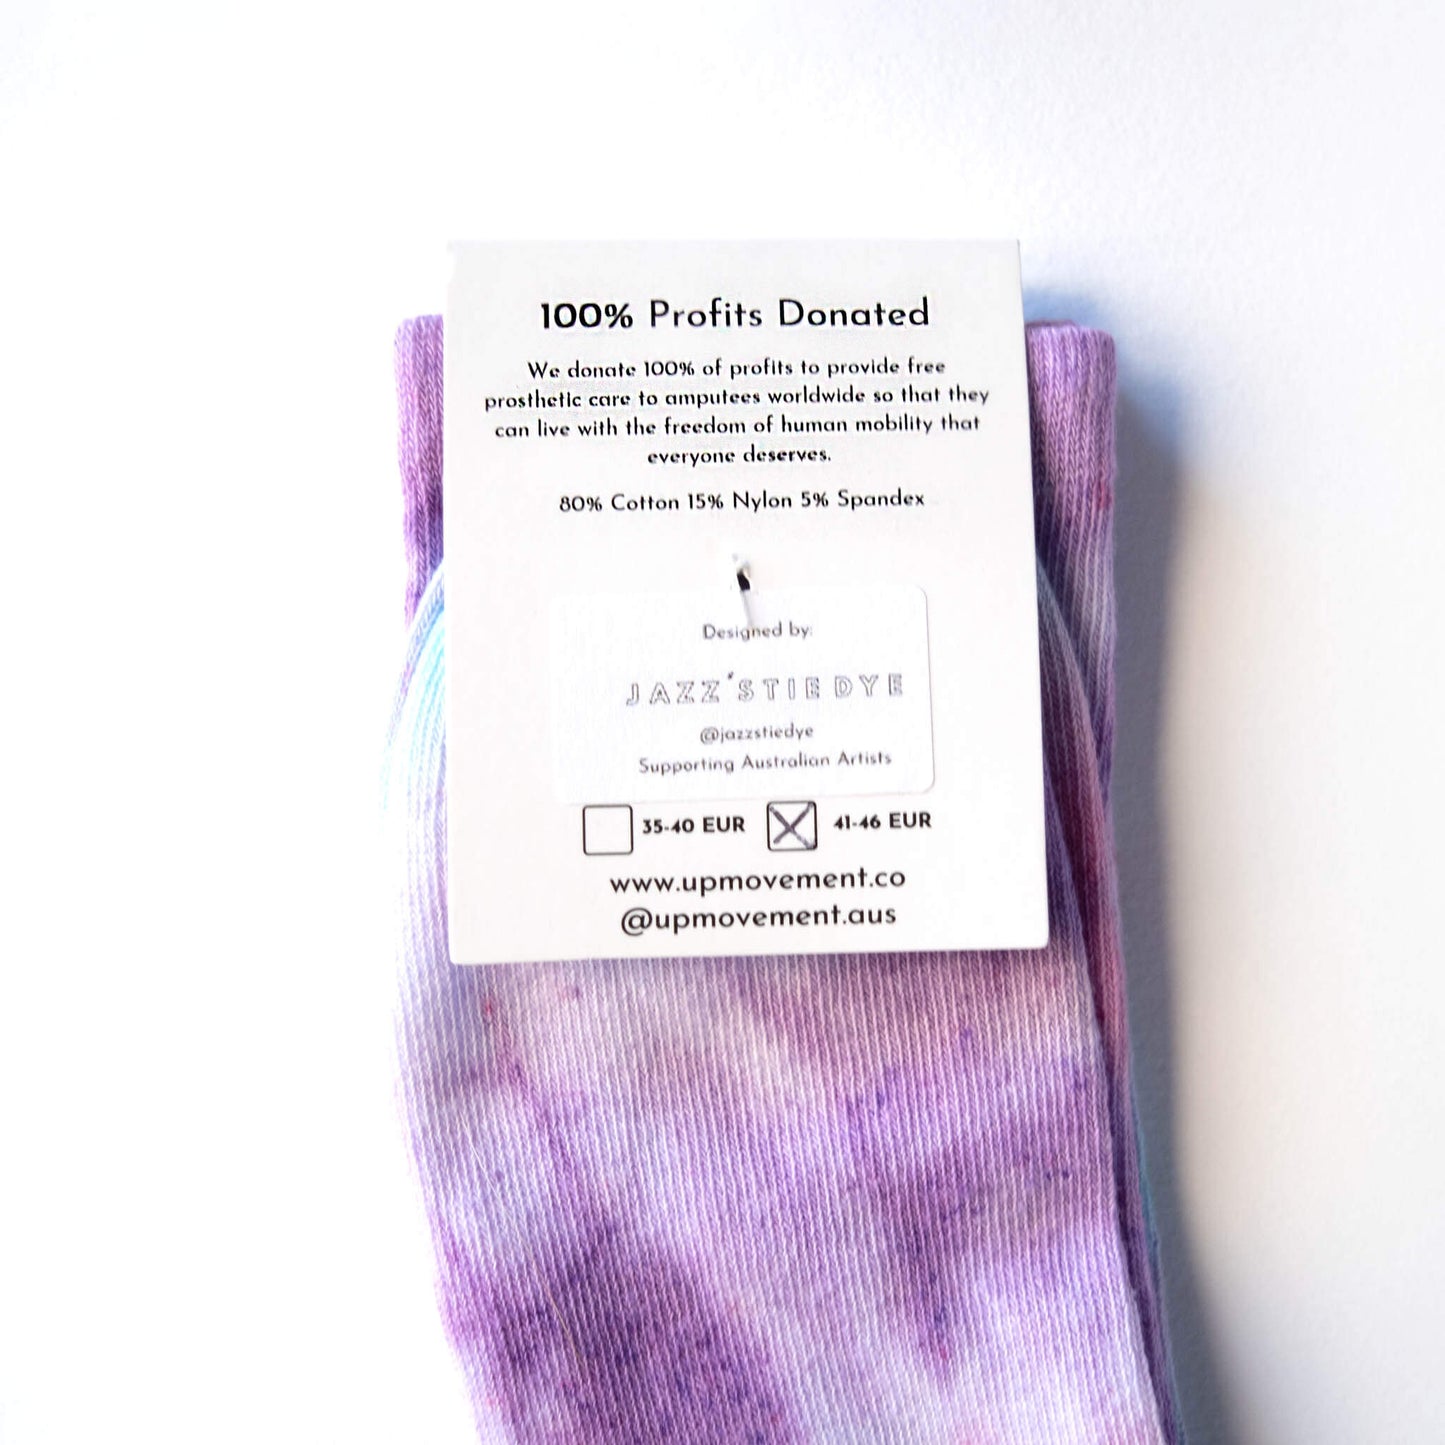 Tie Dye Socks For Good